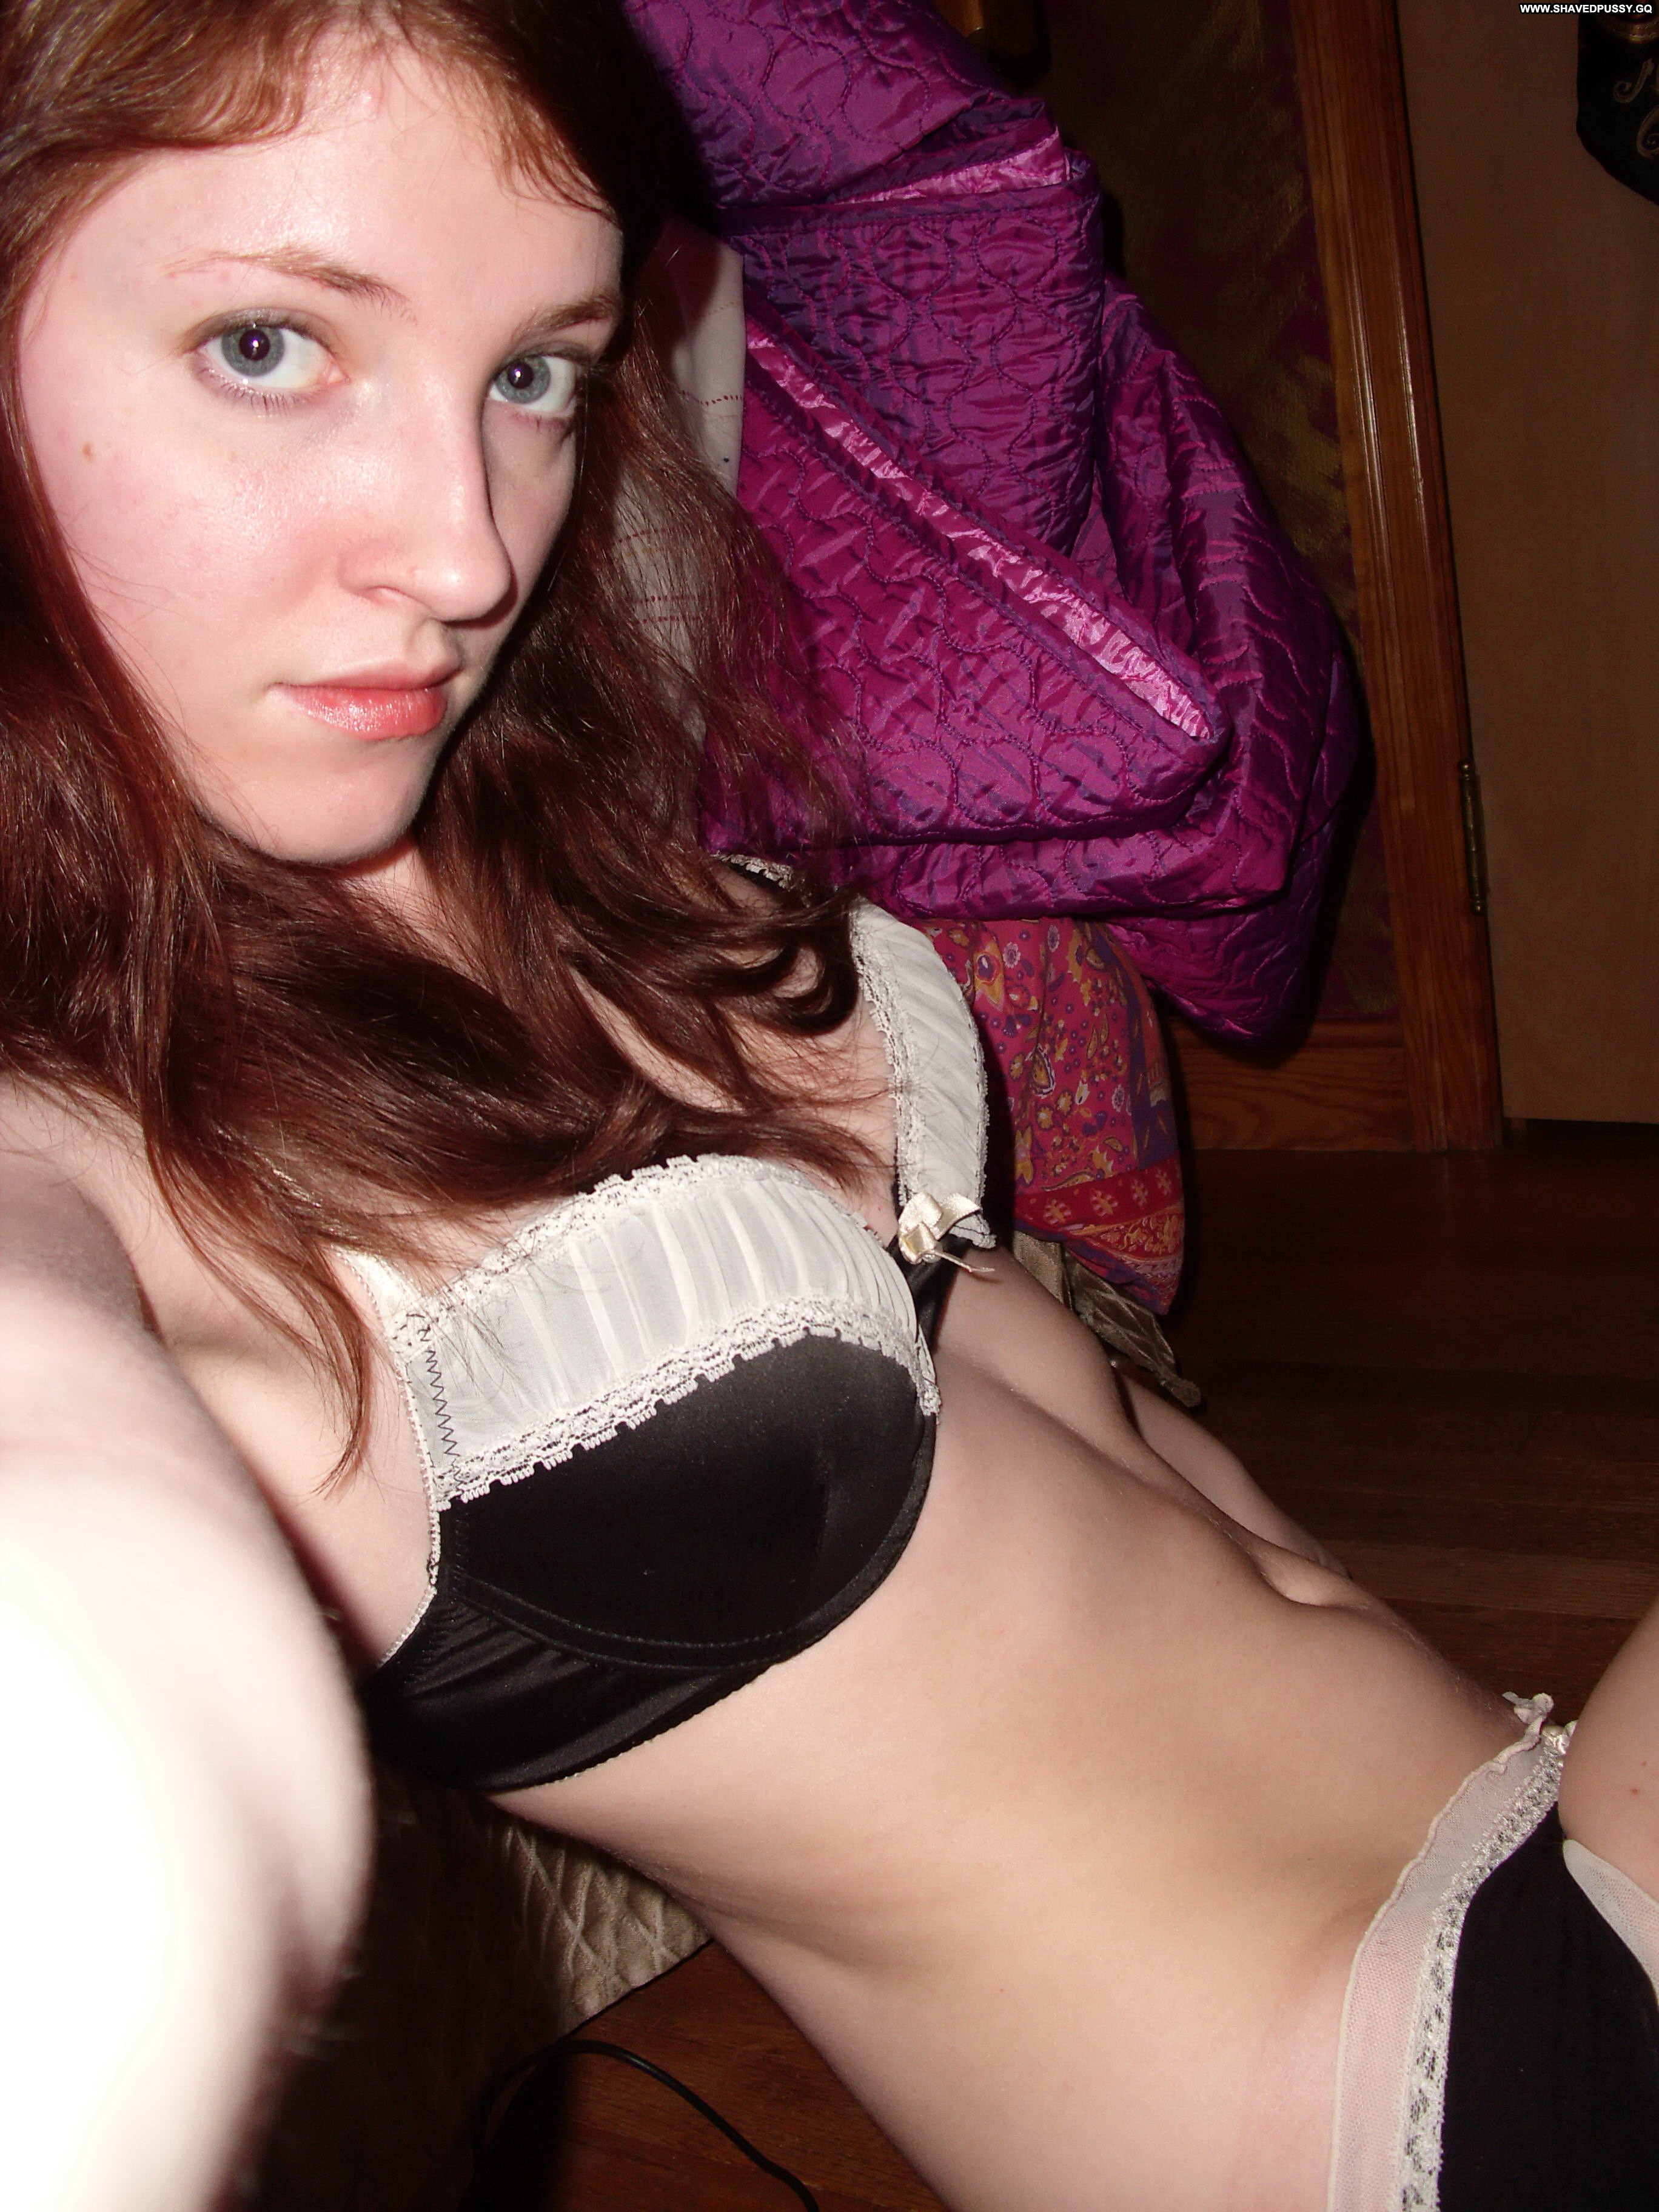 best voyeur bra and panties pics